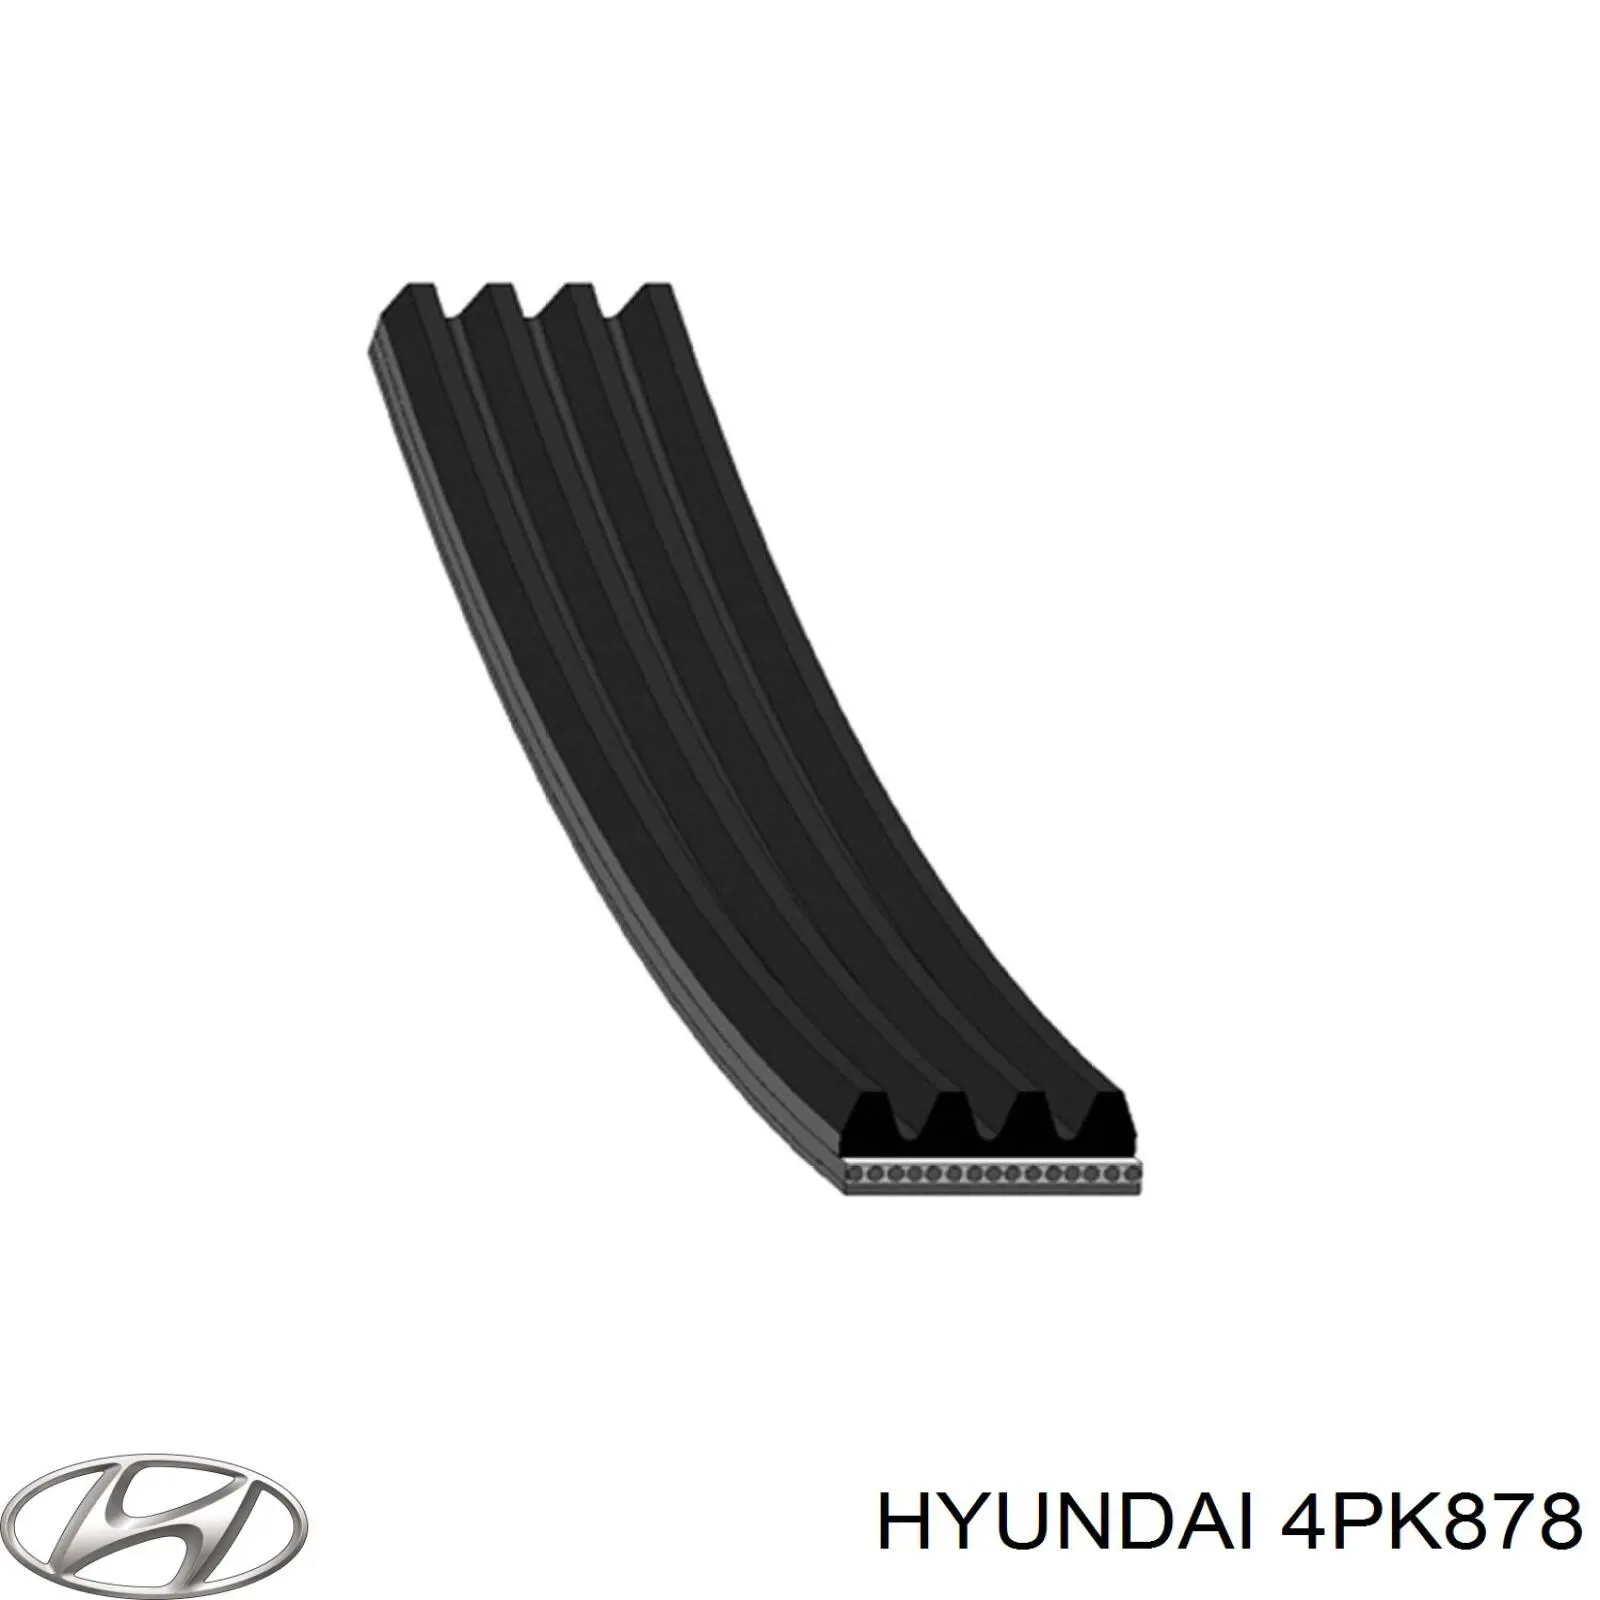 4PK878 Hyundai/Kia correa trapezoidal